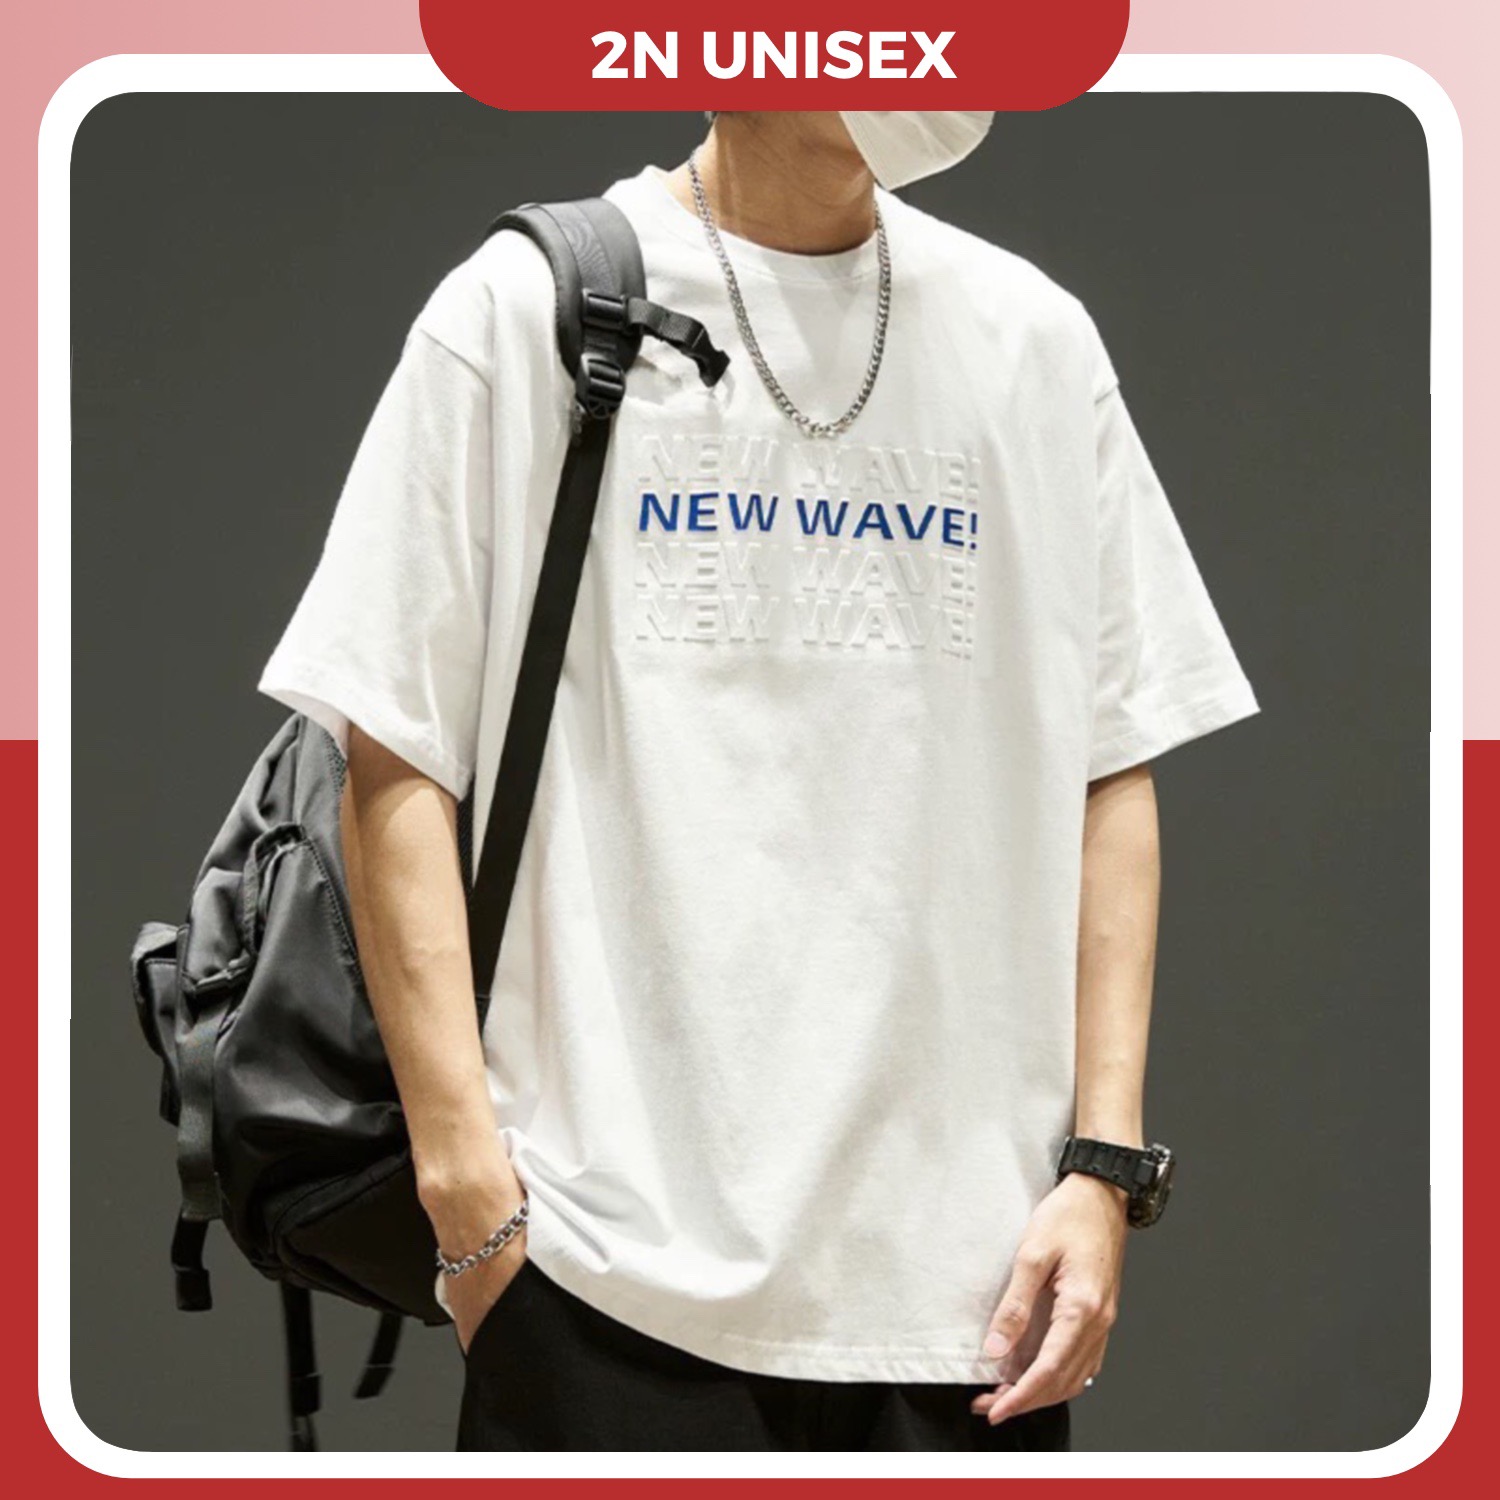 Áo thun tay lỡ form rộng - phông nam nữ cotton oversize - T shirt new wave a - 2N Unisex